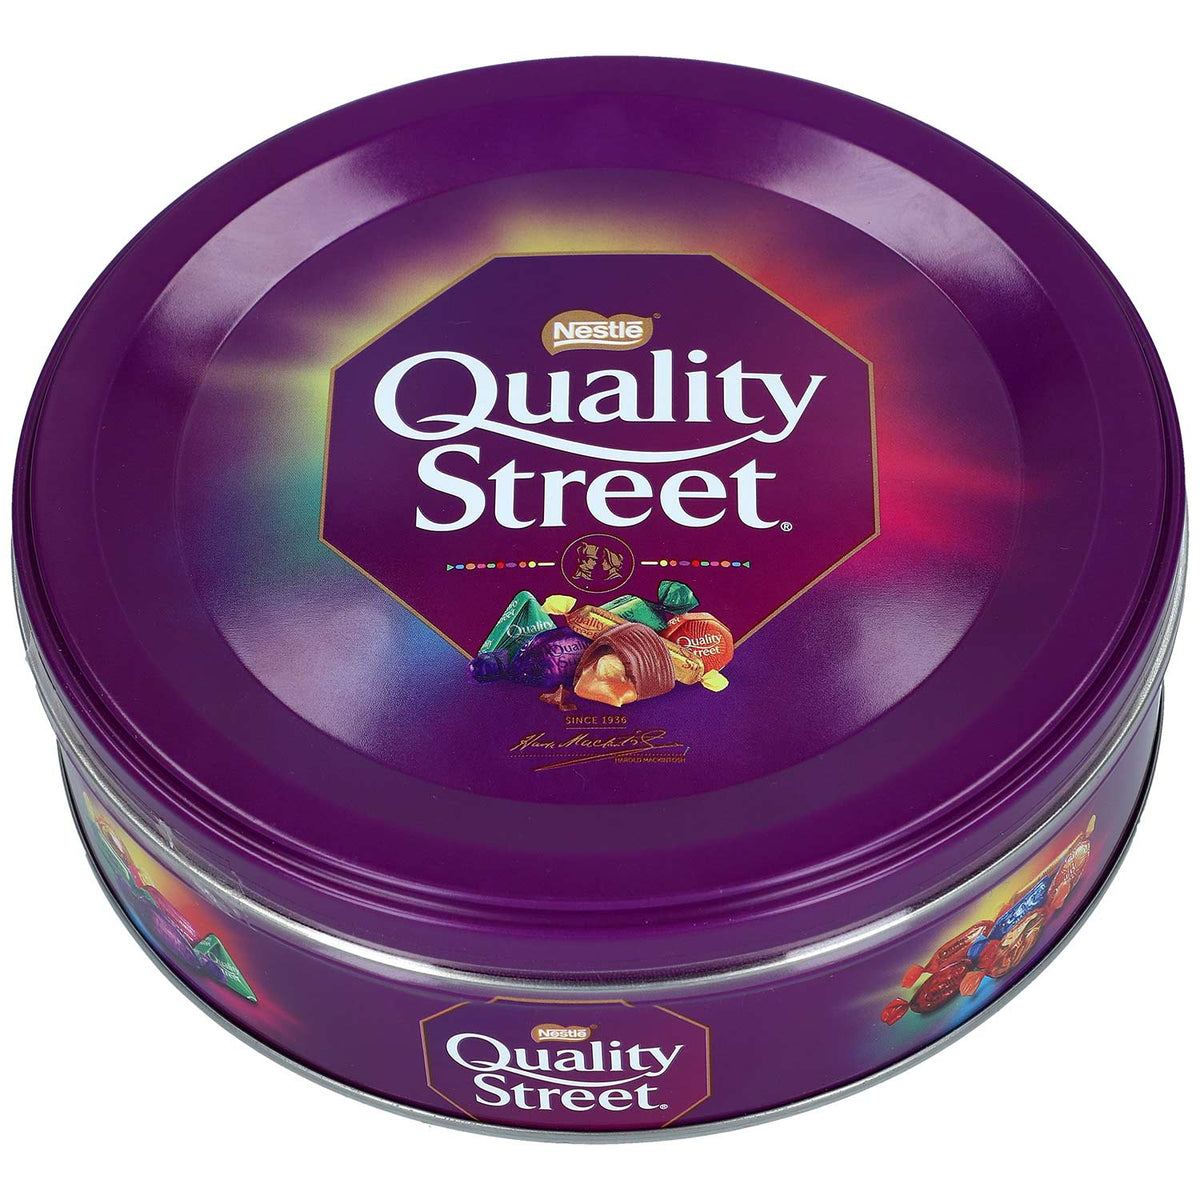 Boîte de chocolats Quality Street - Nestlé - 480g